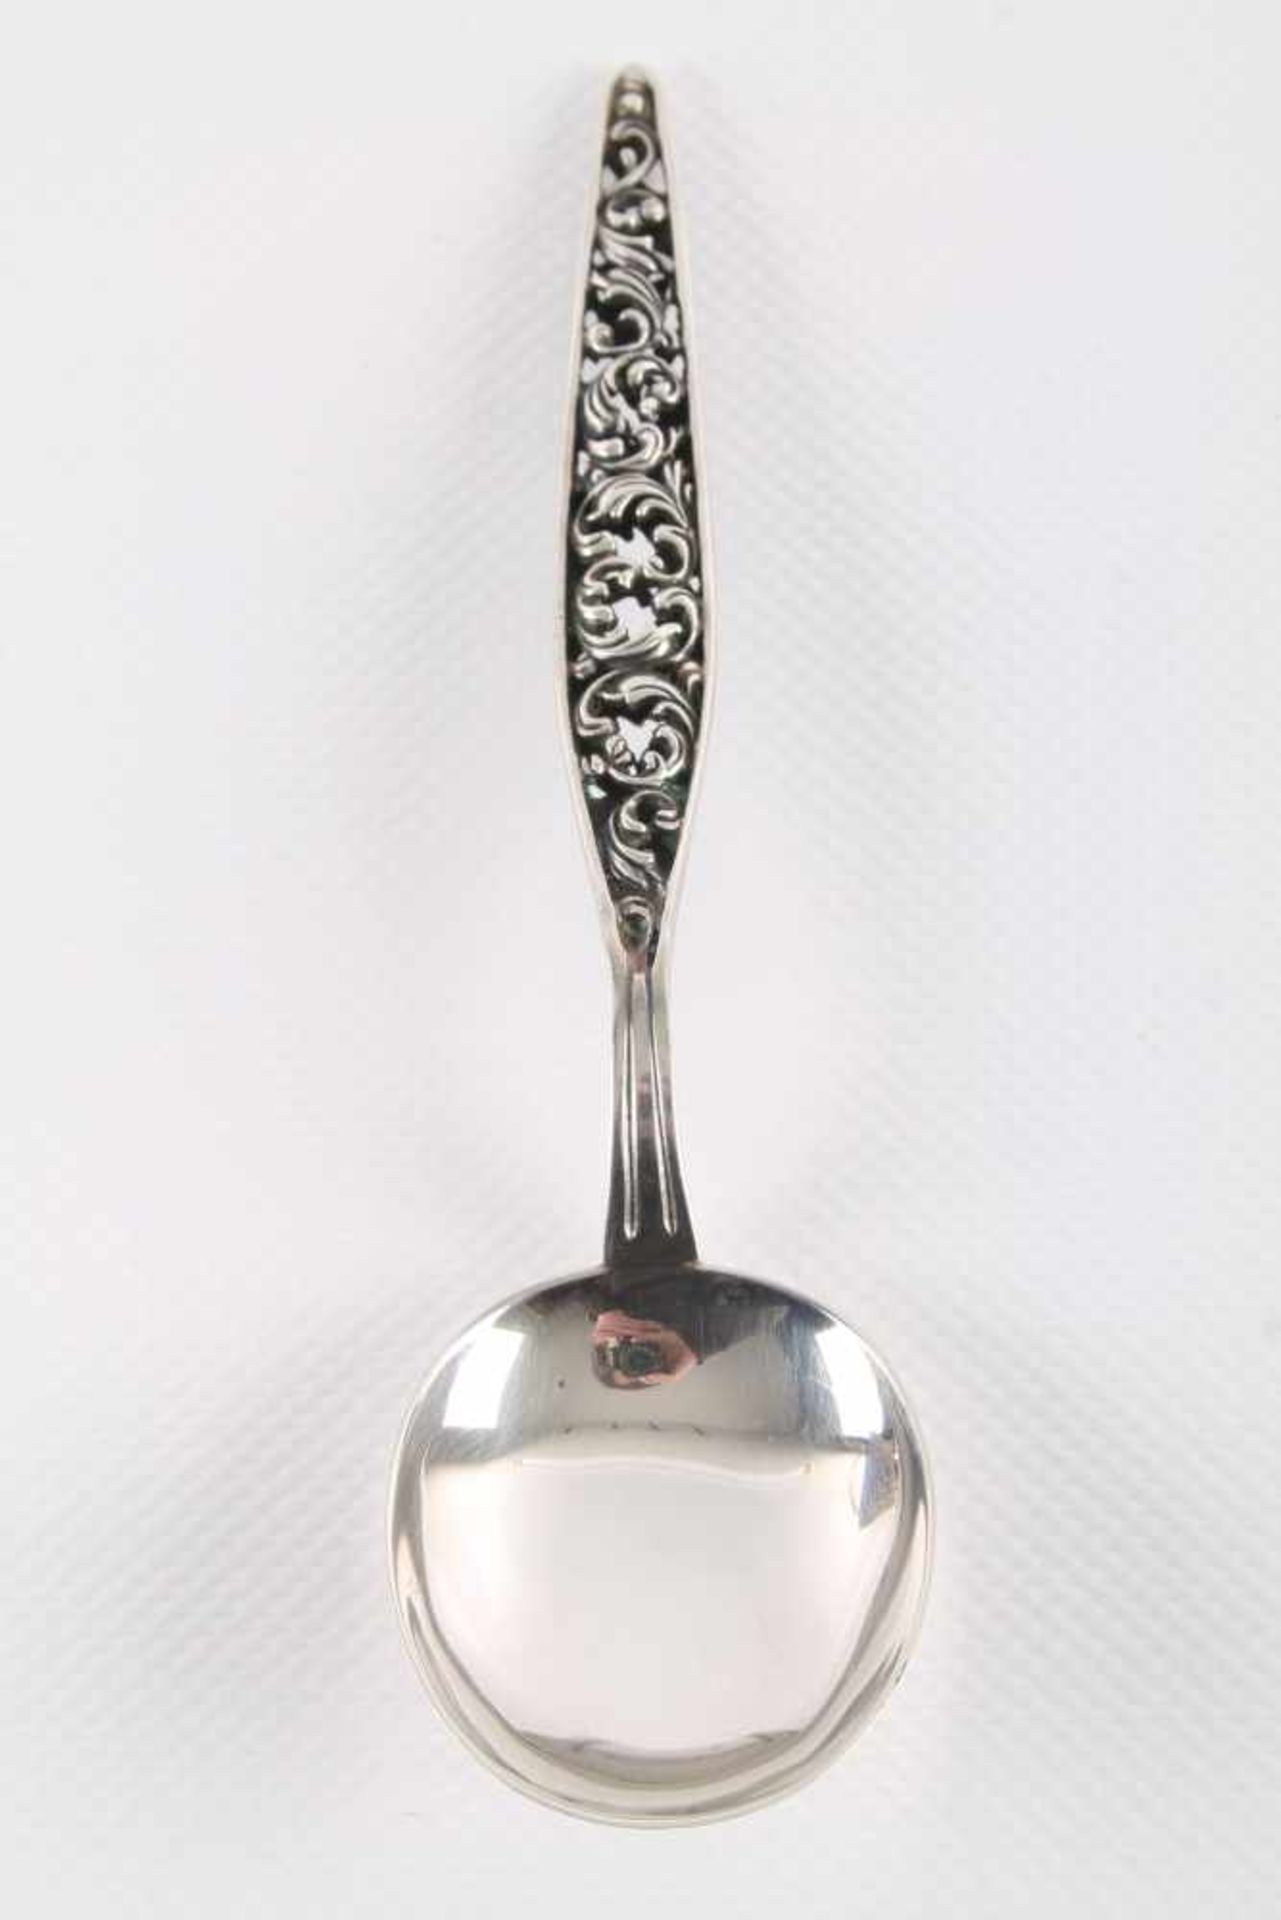 835 Silber - große Zuckerschale mit kobaltblauem Glaseinsatz und Zuckerlöffel, silver sugar bowl - Image 5 of 6